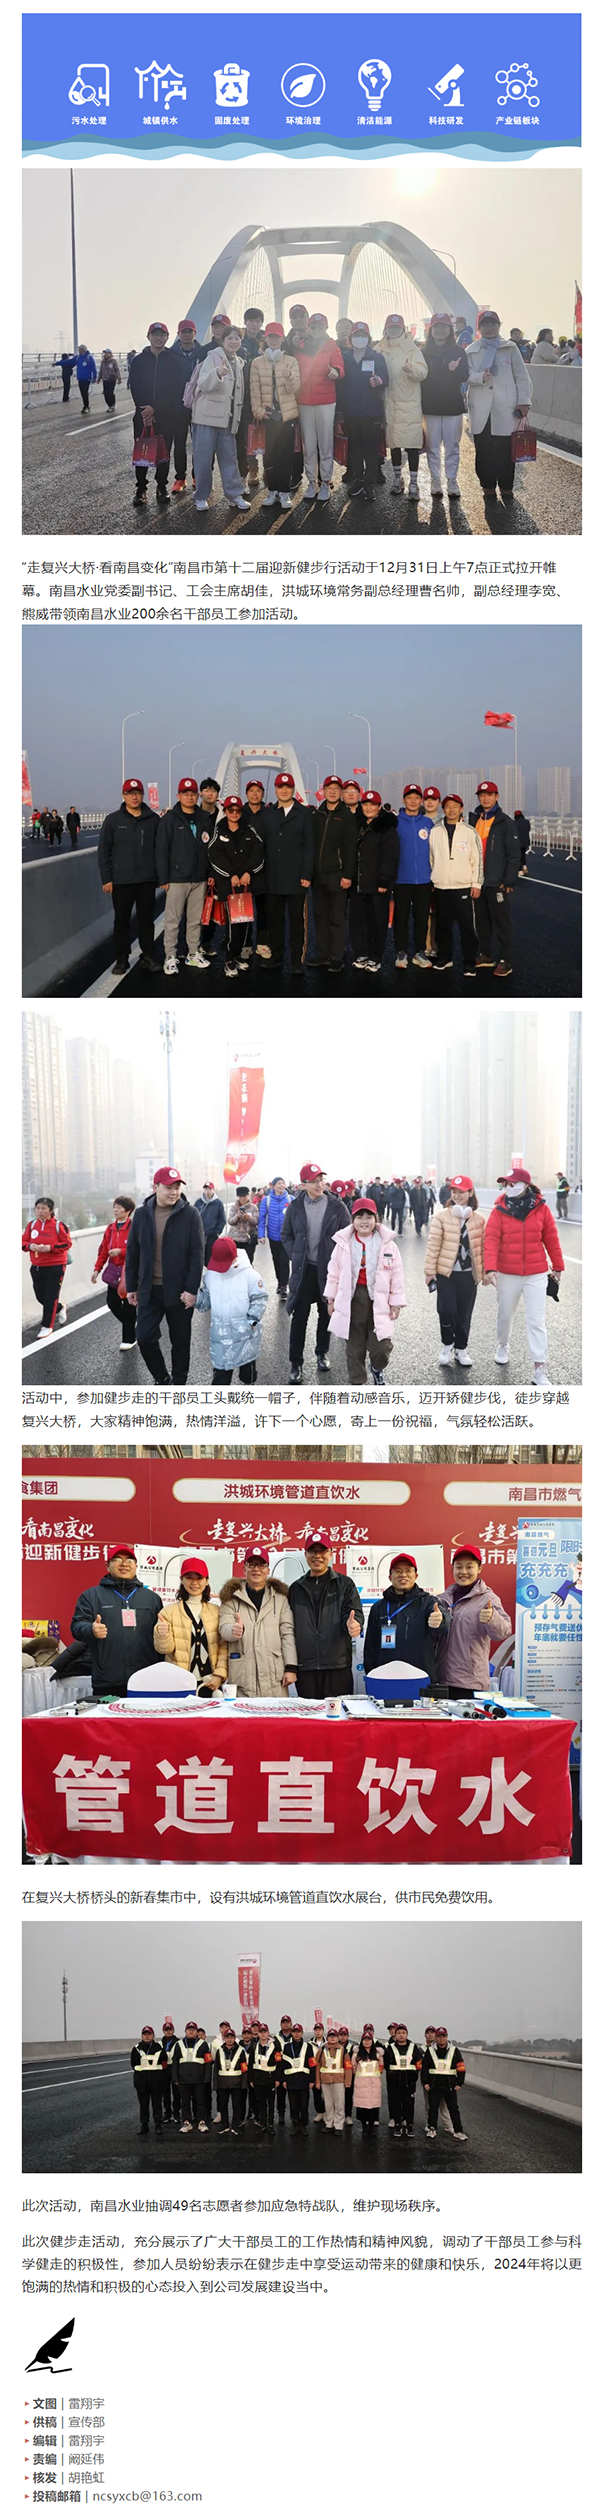 【南水风采】南昌水业组织参加南昌市第十二届迎新健步行活动.png